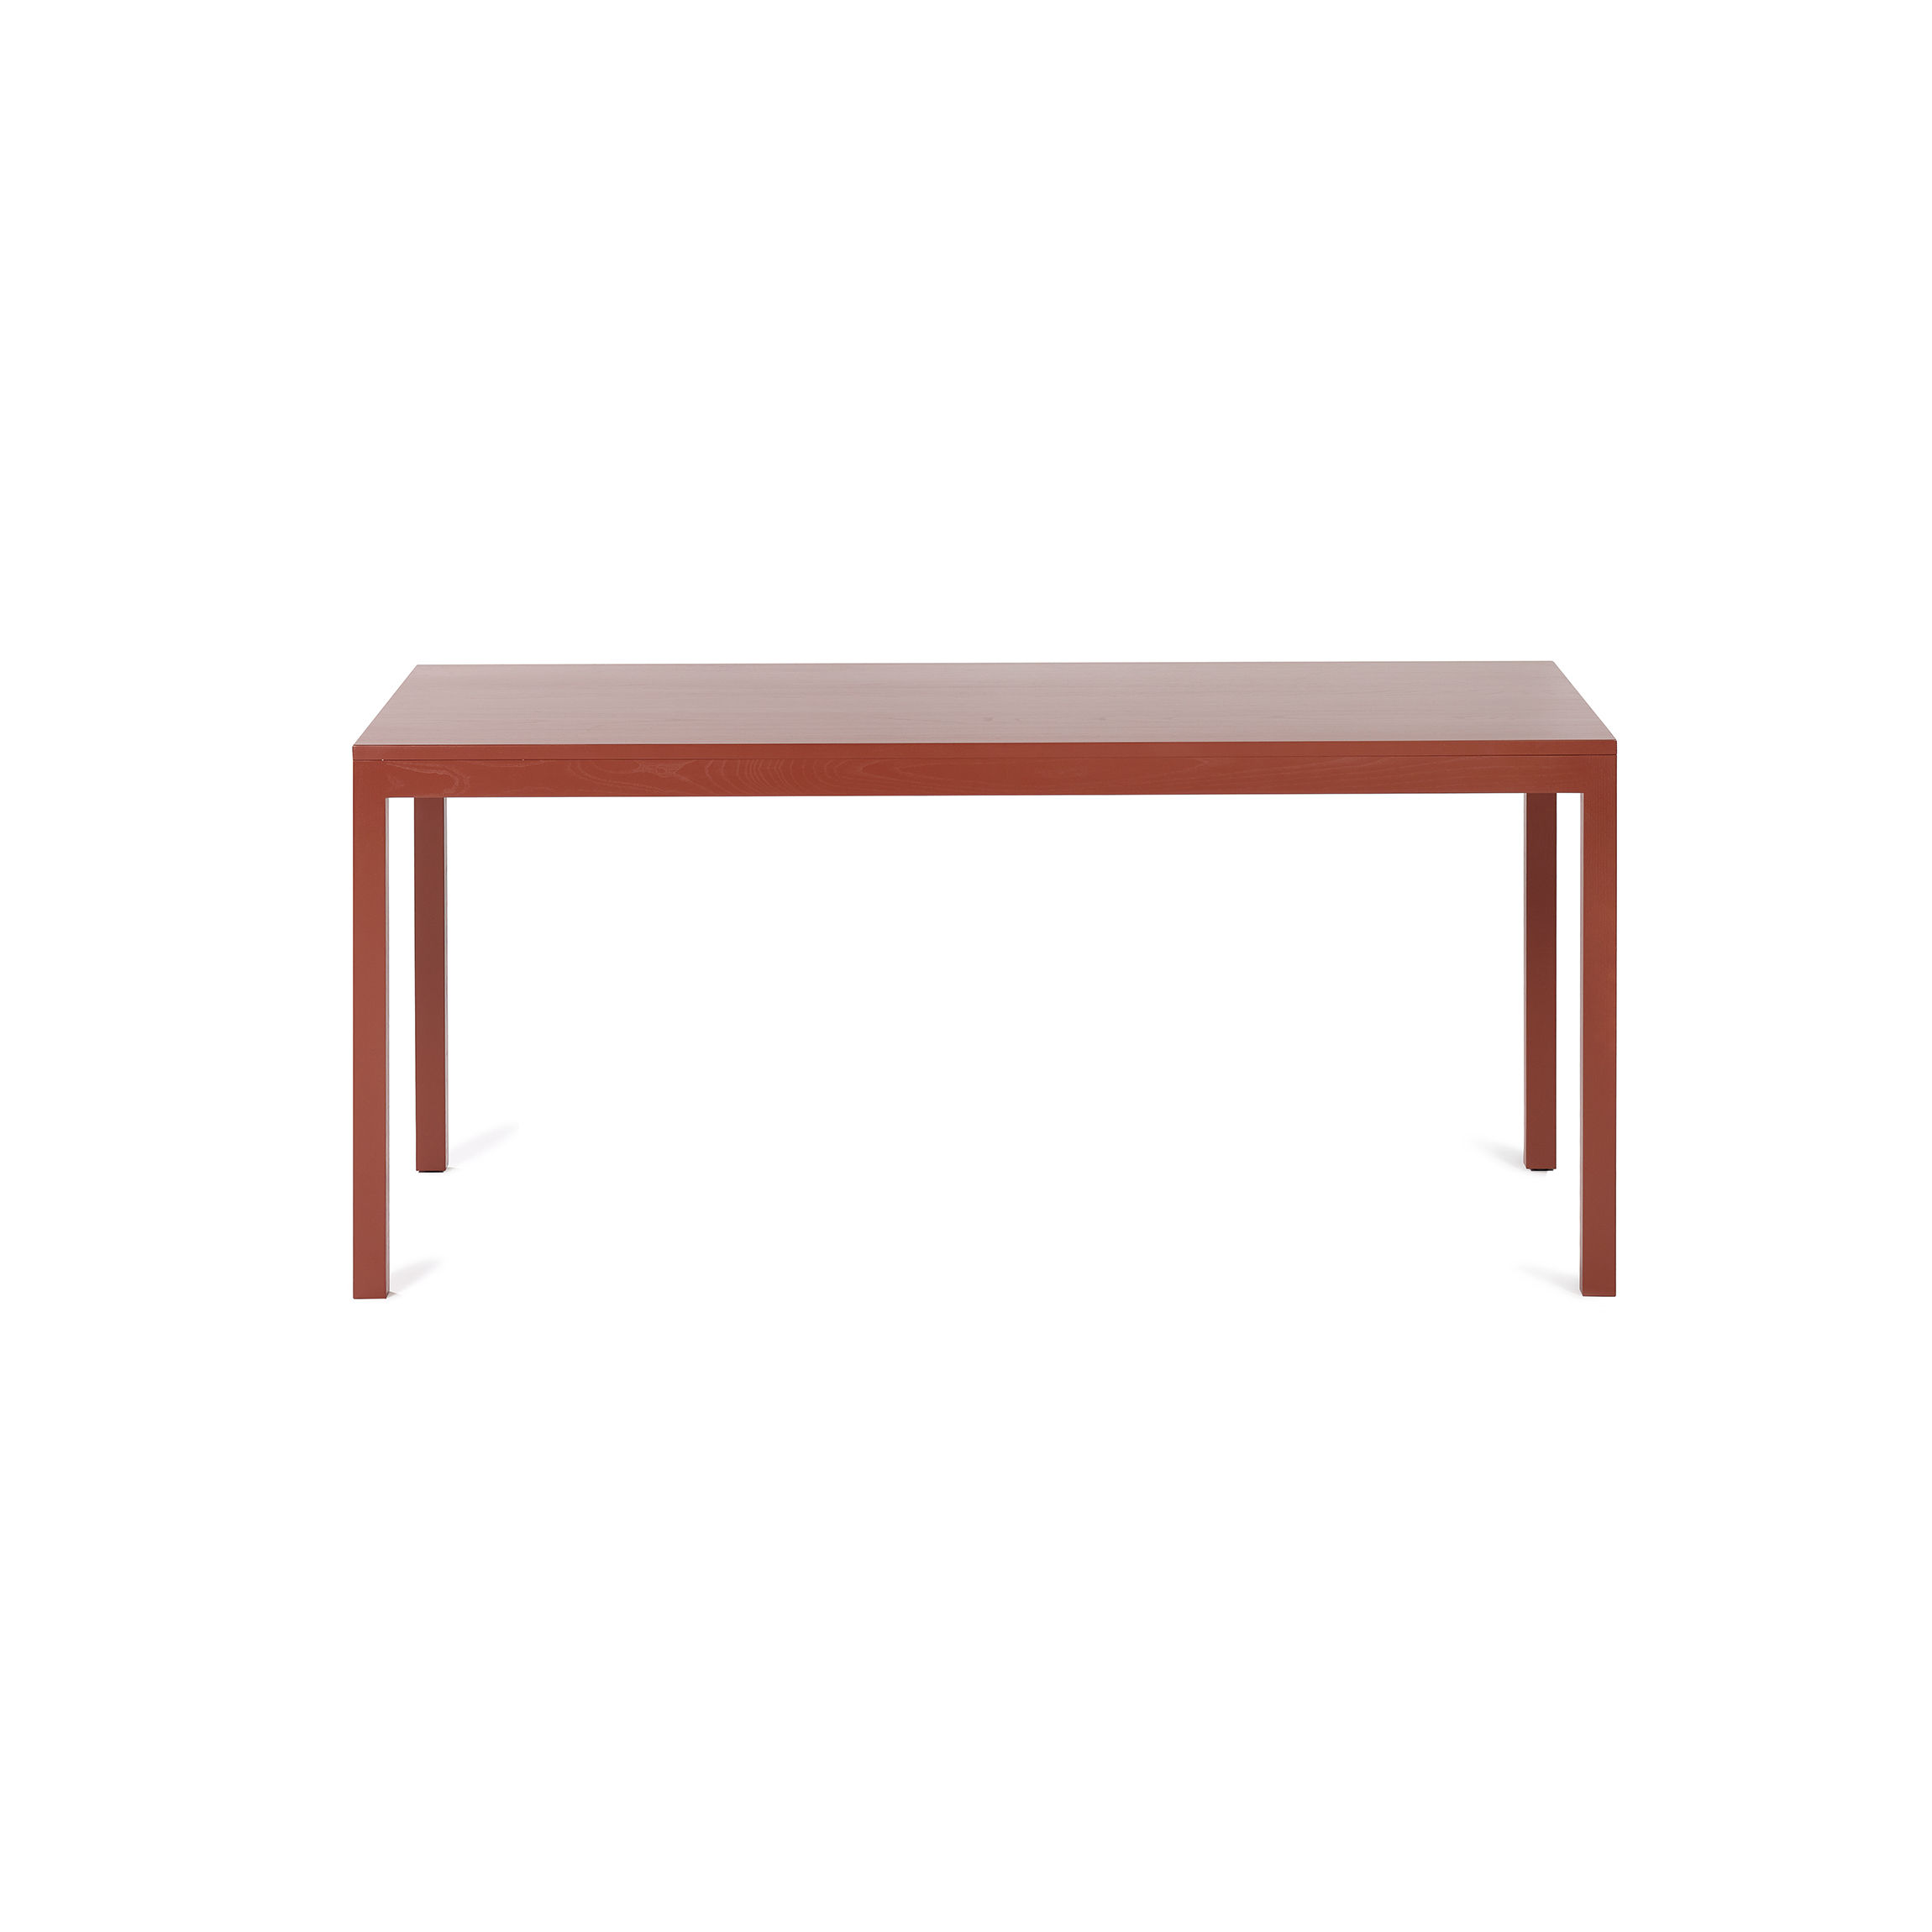 | von objects lehm Silent valerie In Made - Small Design rechteckiger Tisch